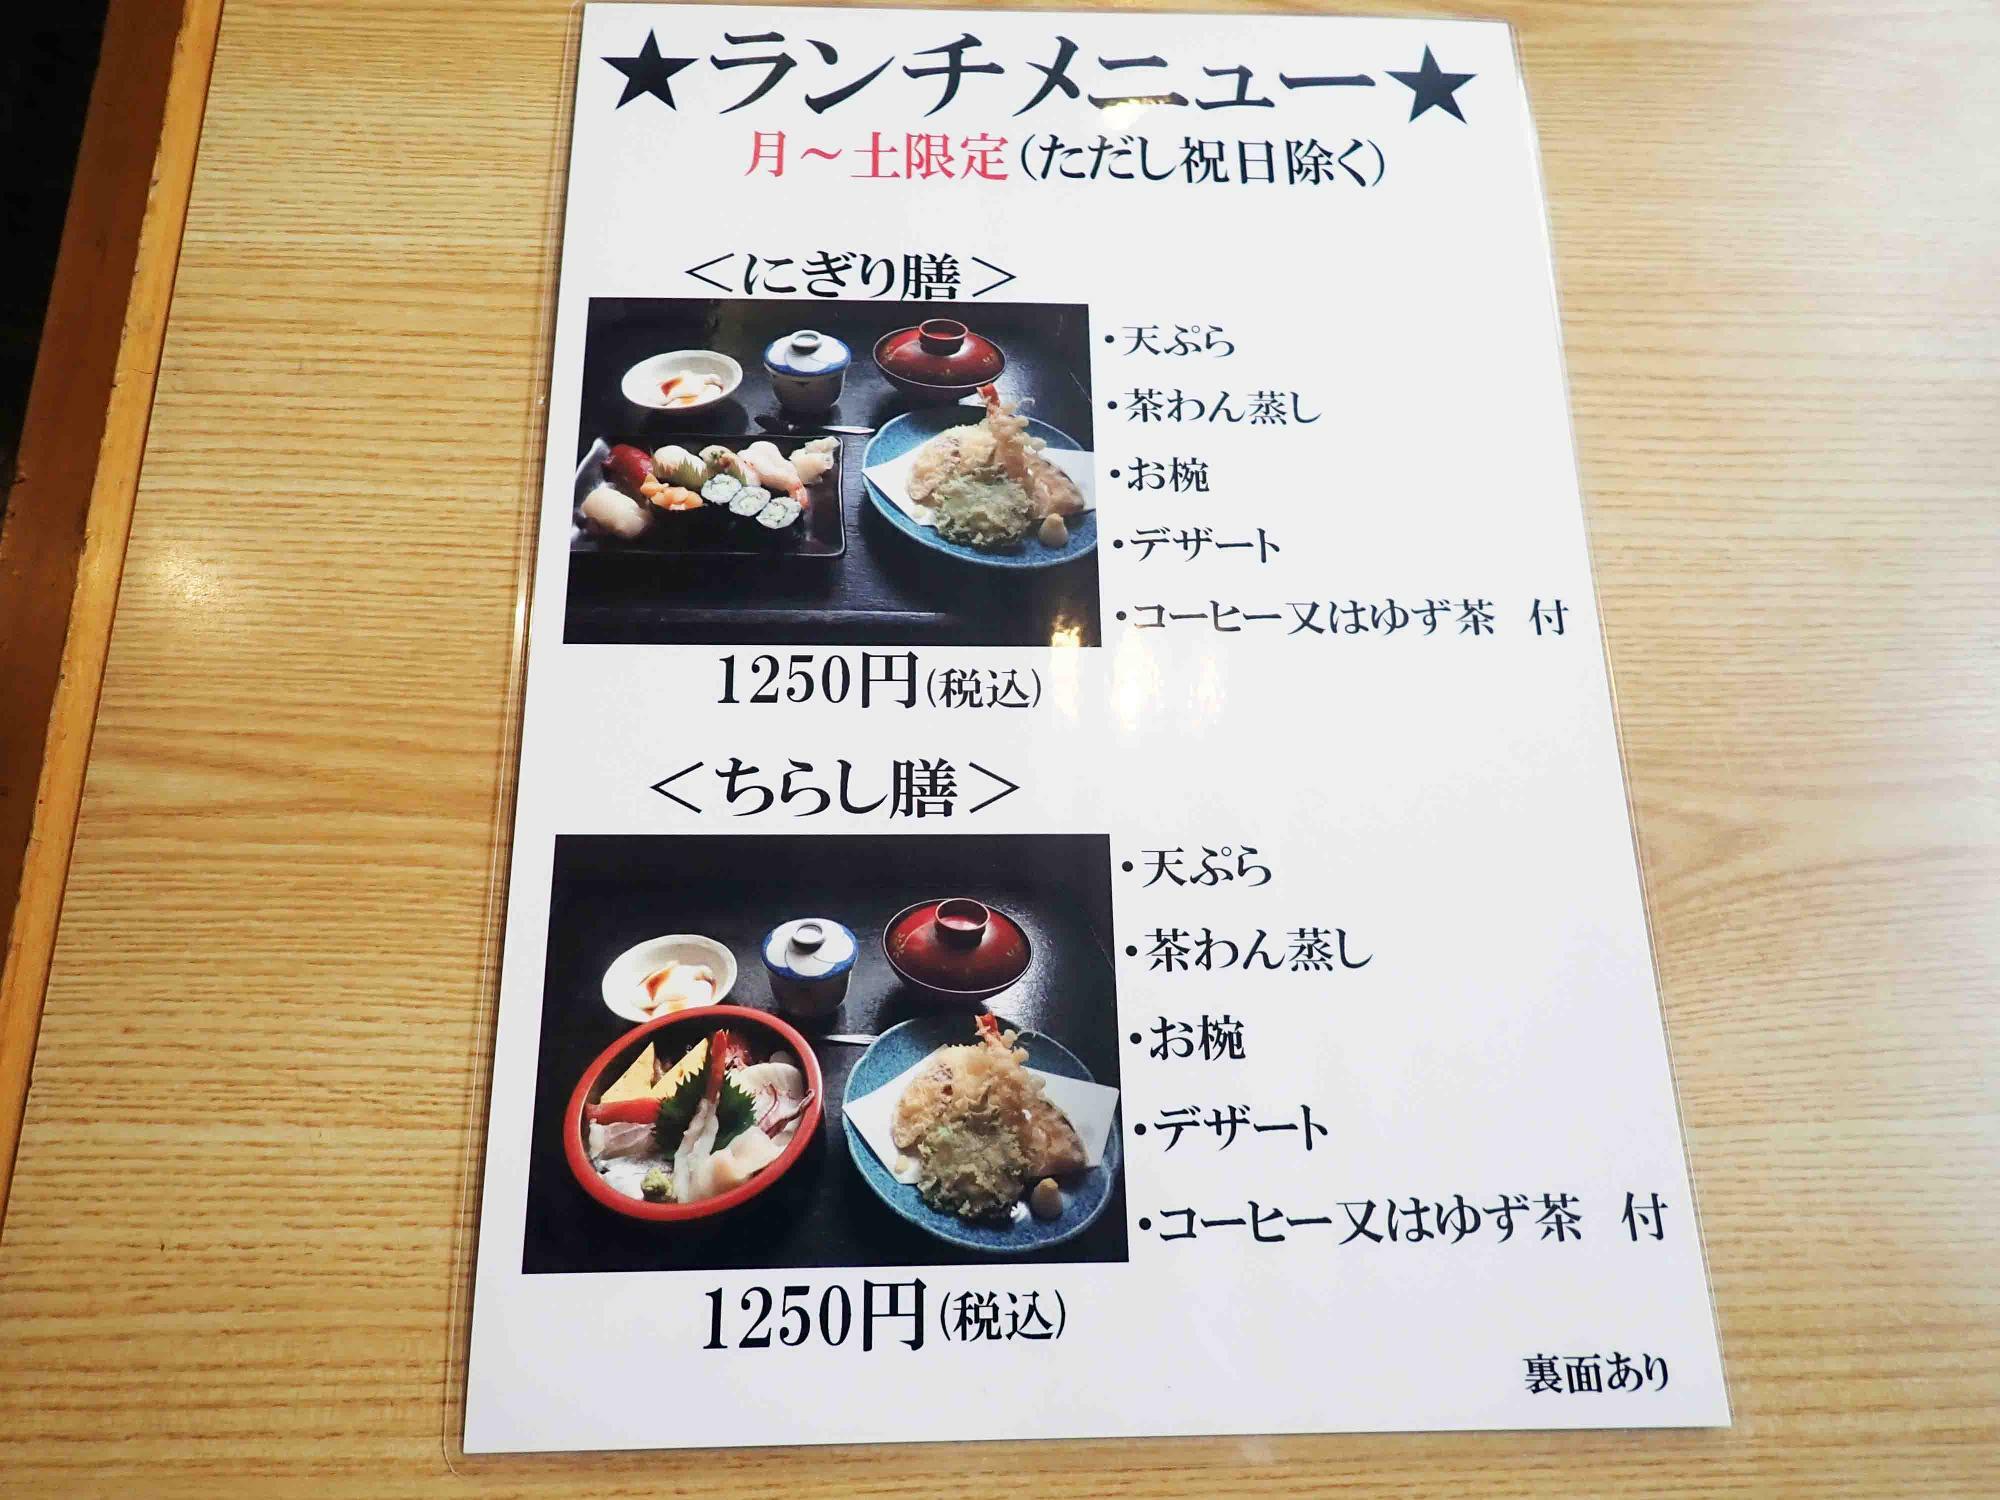 天ぷらがついた膳もあります